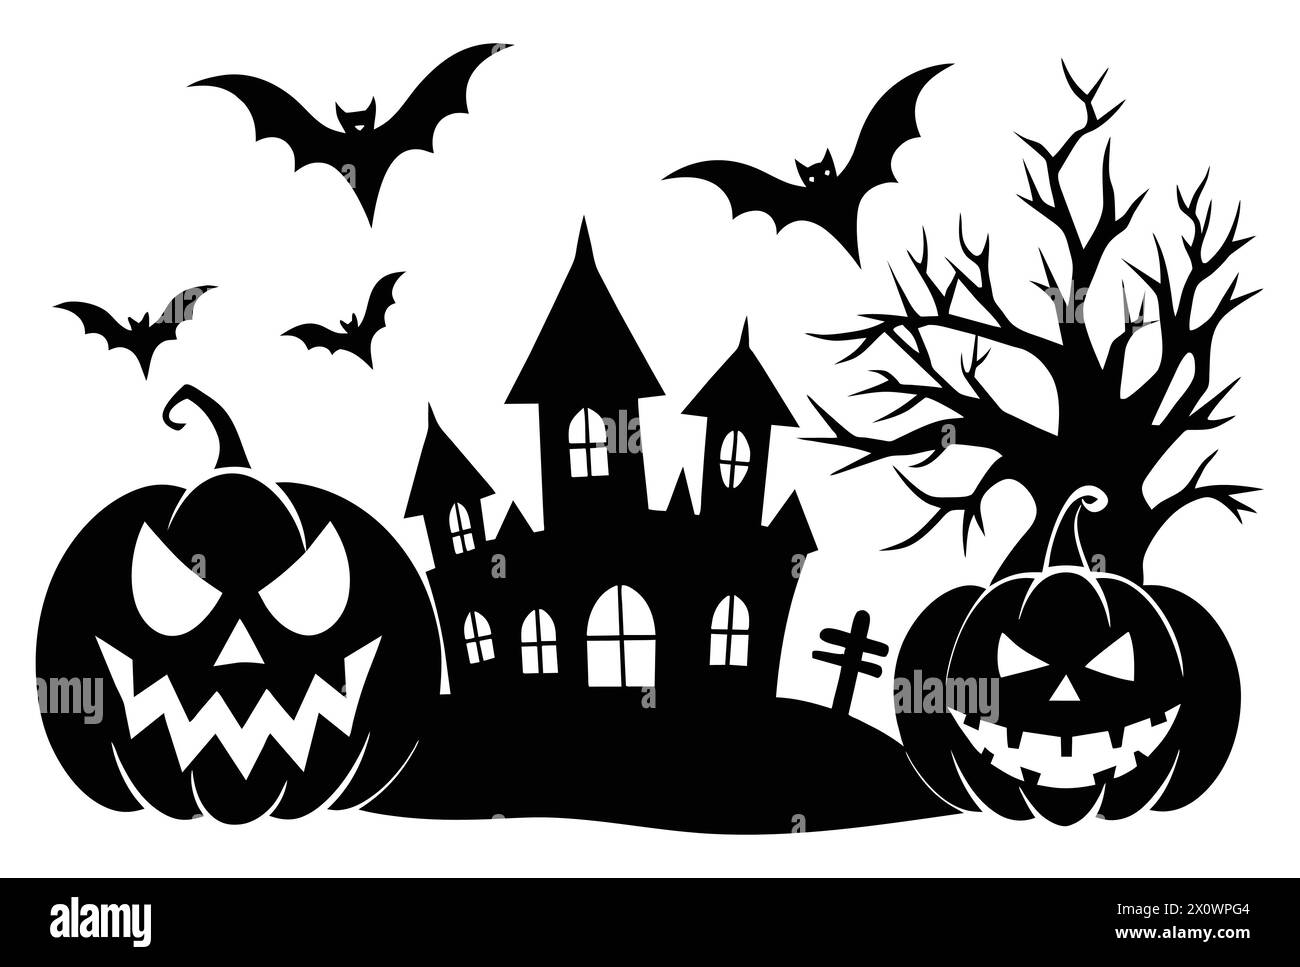 Fond d'halloween avec citrouille, 'Patch de citrouille hantée - fond d'Halloween avec Jack-o'-lanterne éclatante' Illustration de Vecteur